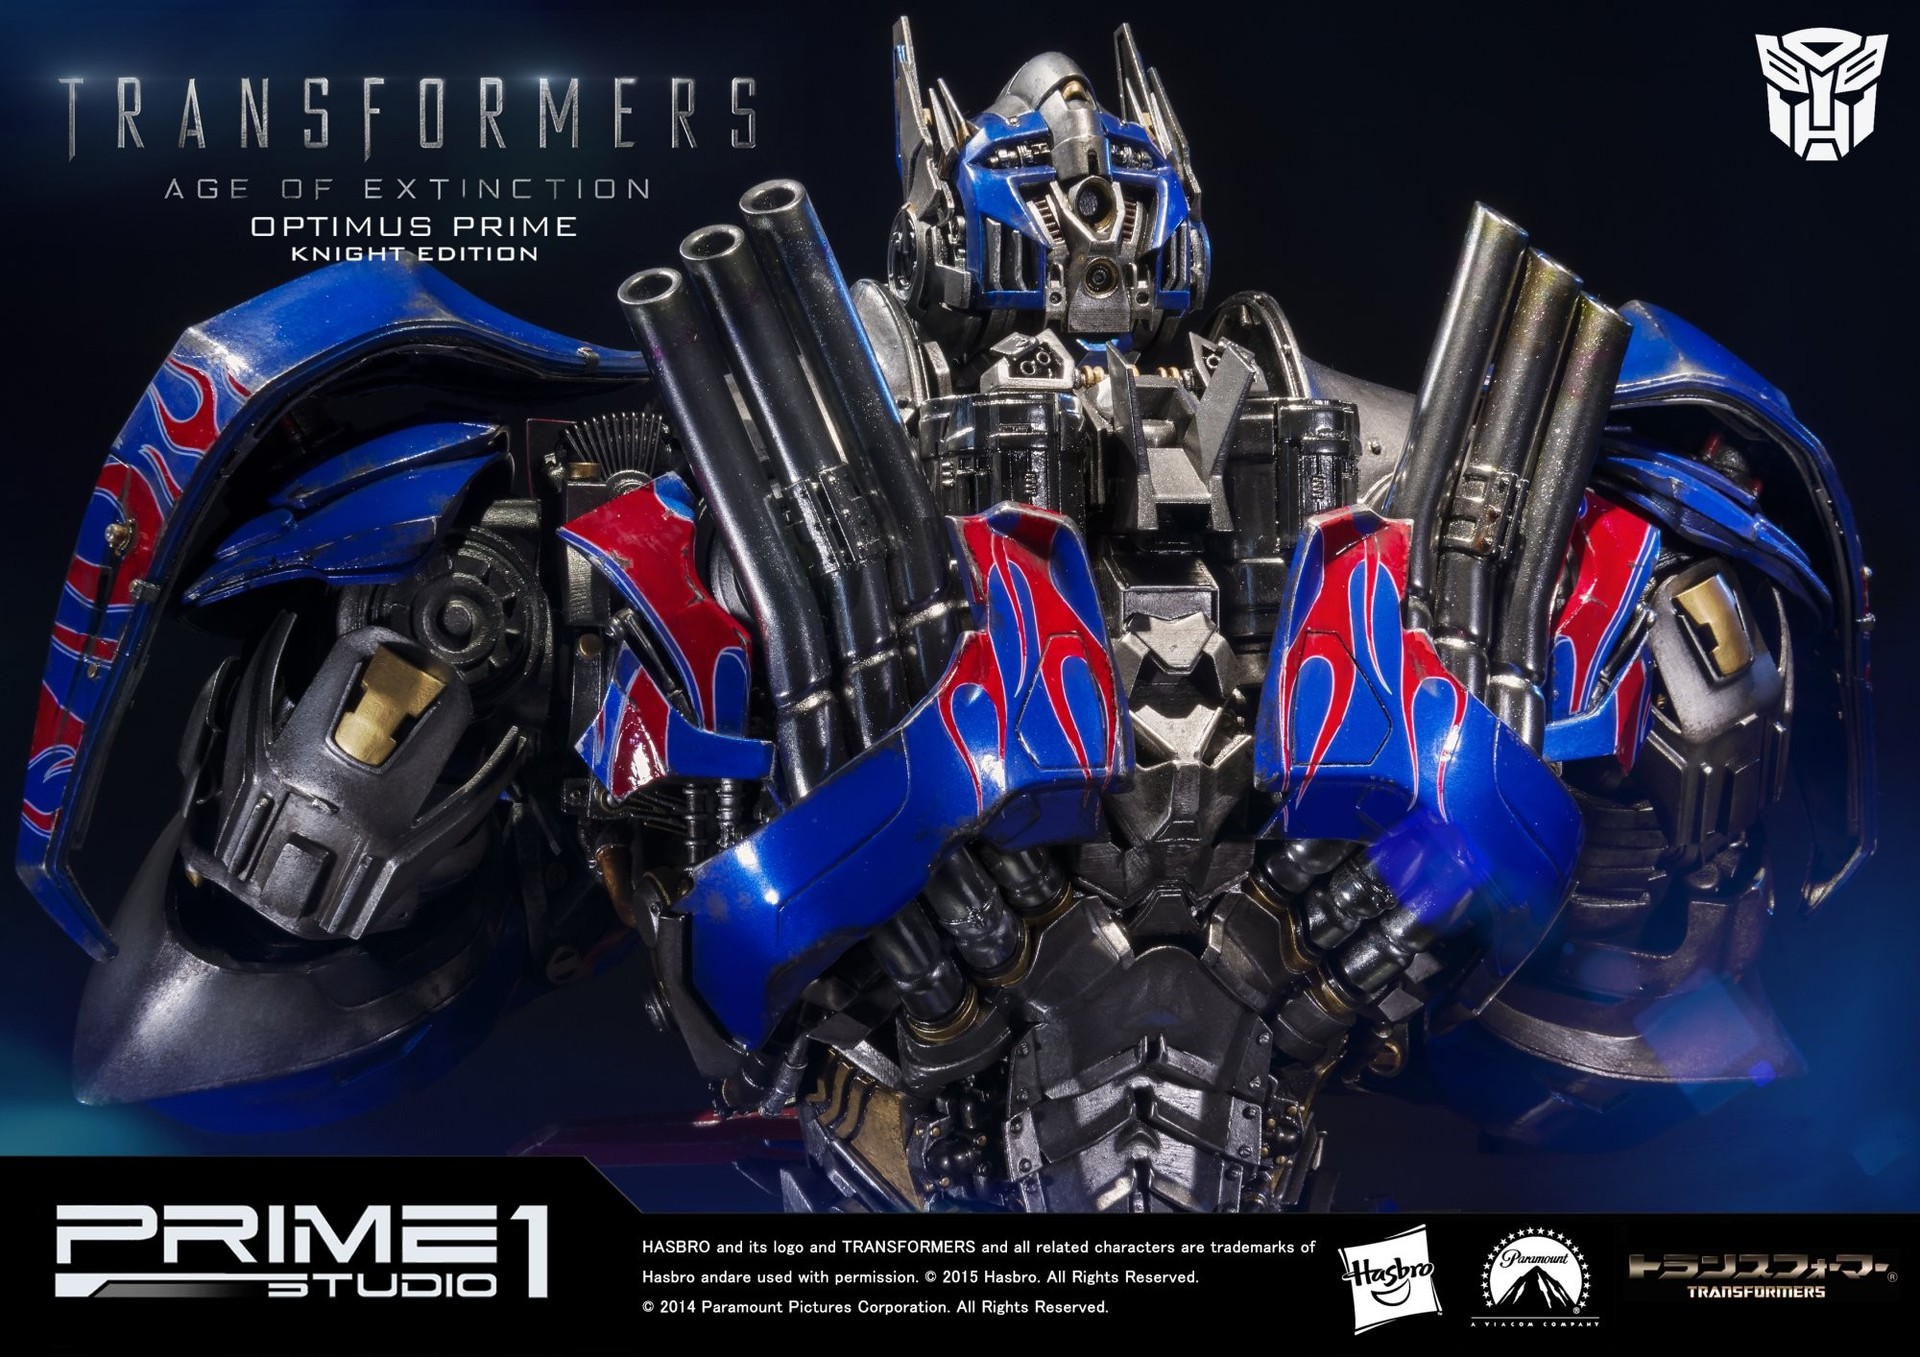 Transformer edition. Оптимус Прайм Прайм 1 студио. Prime 1 Studio Transformers age of Extinction Optimus Prime. Optimus Prime Prime 1 Studio. Prime 1 Studio Transformers.